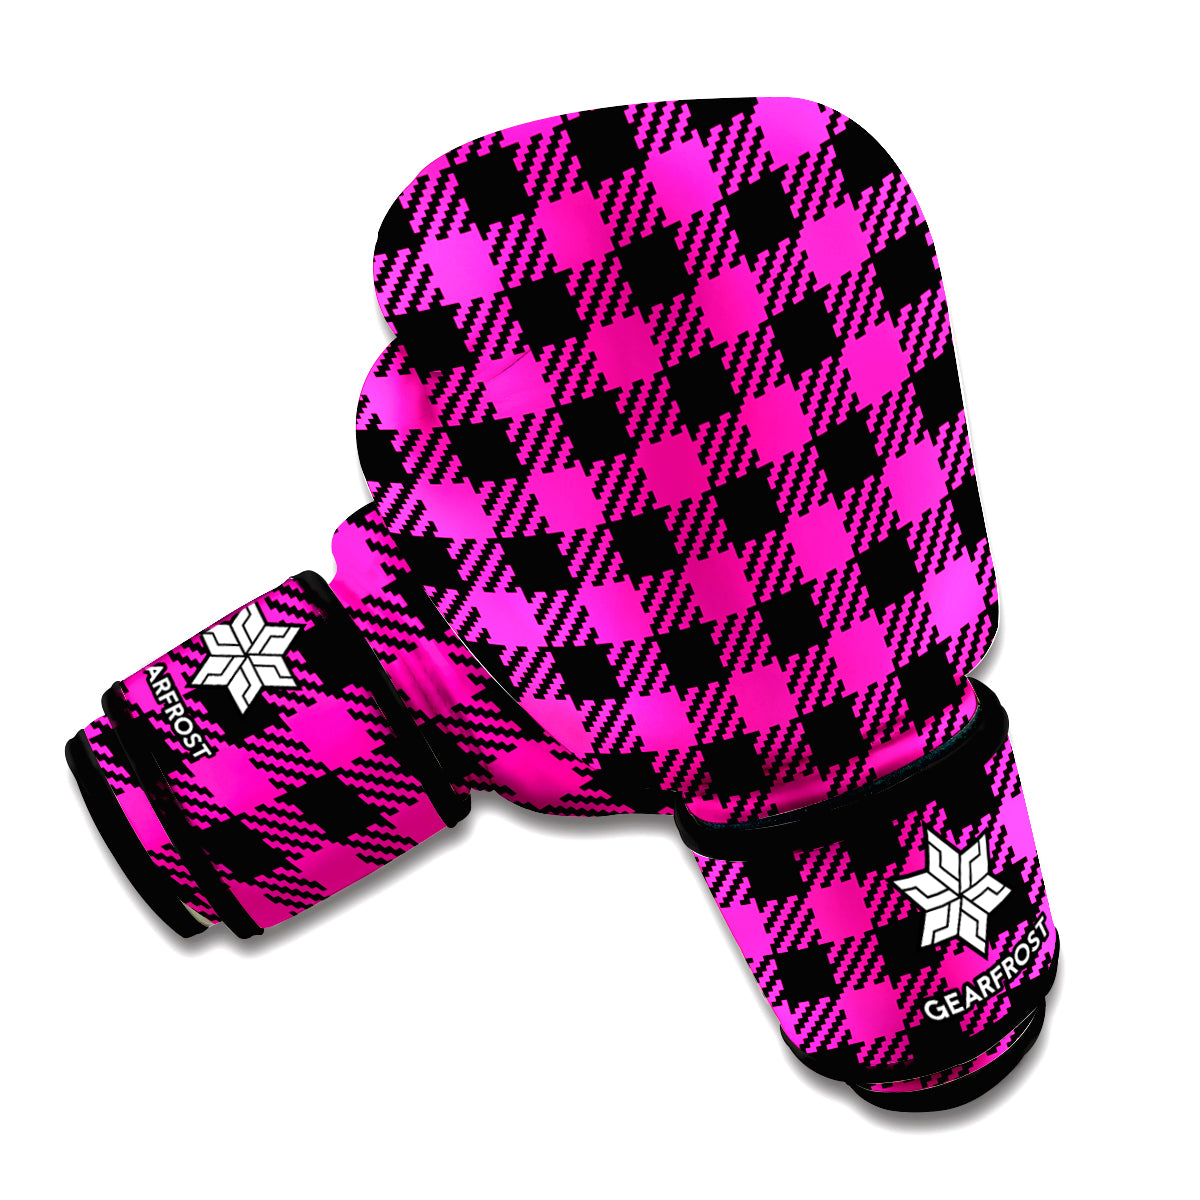 Hot Pink Buffalo Plaid Print Boxing Gloves